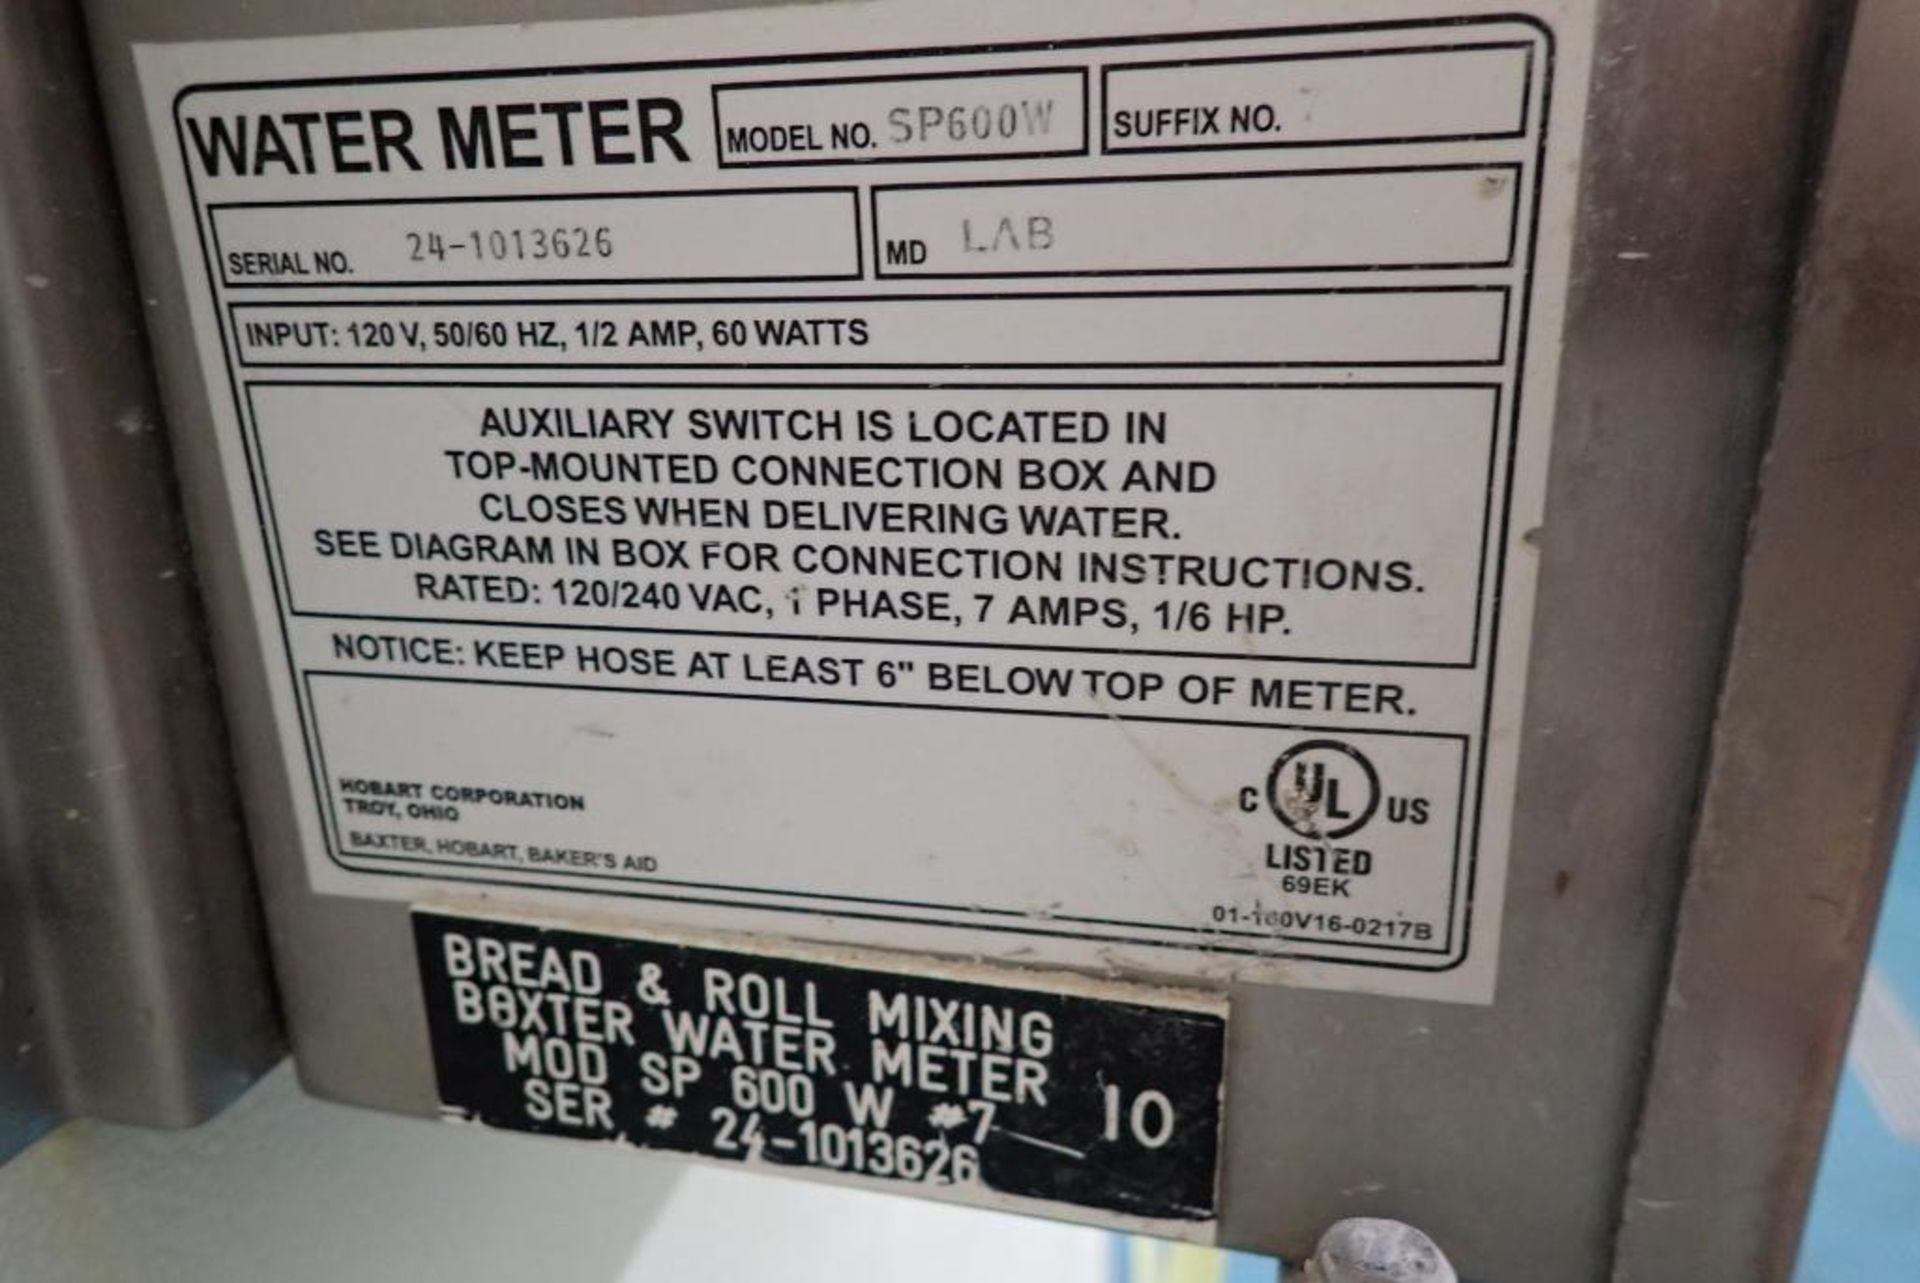 Baxter water meter - Image 5 of 5